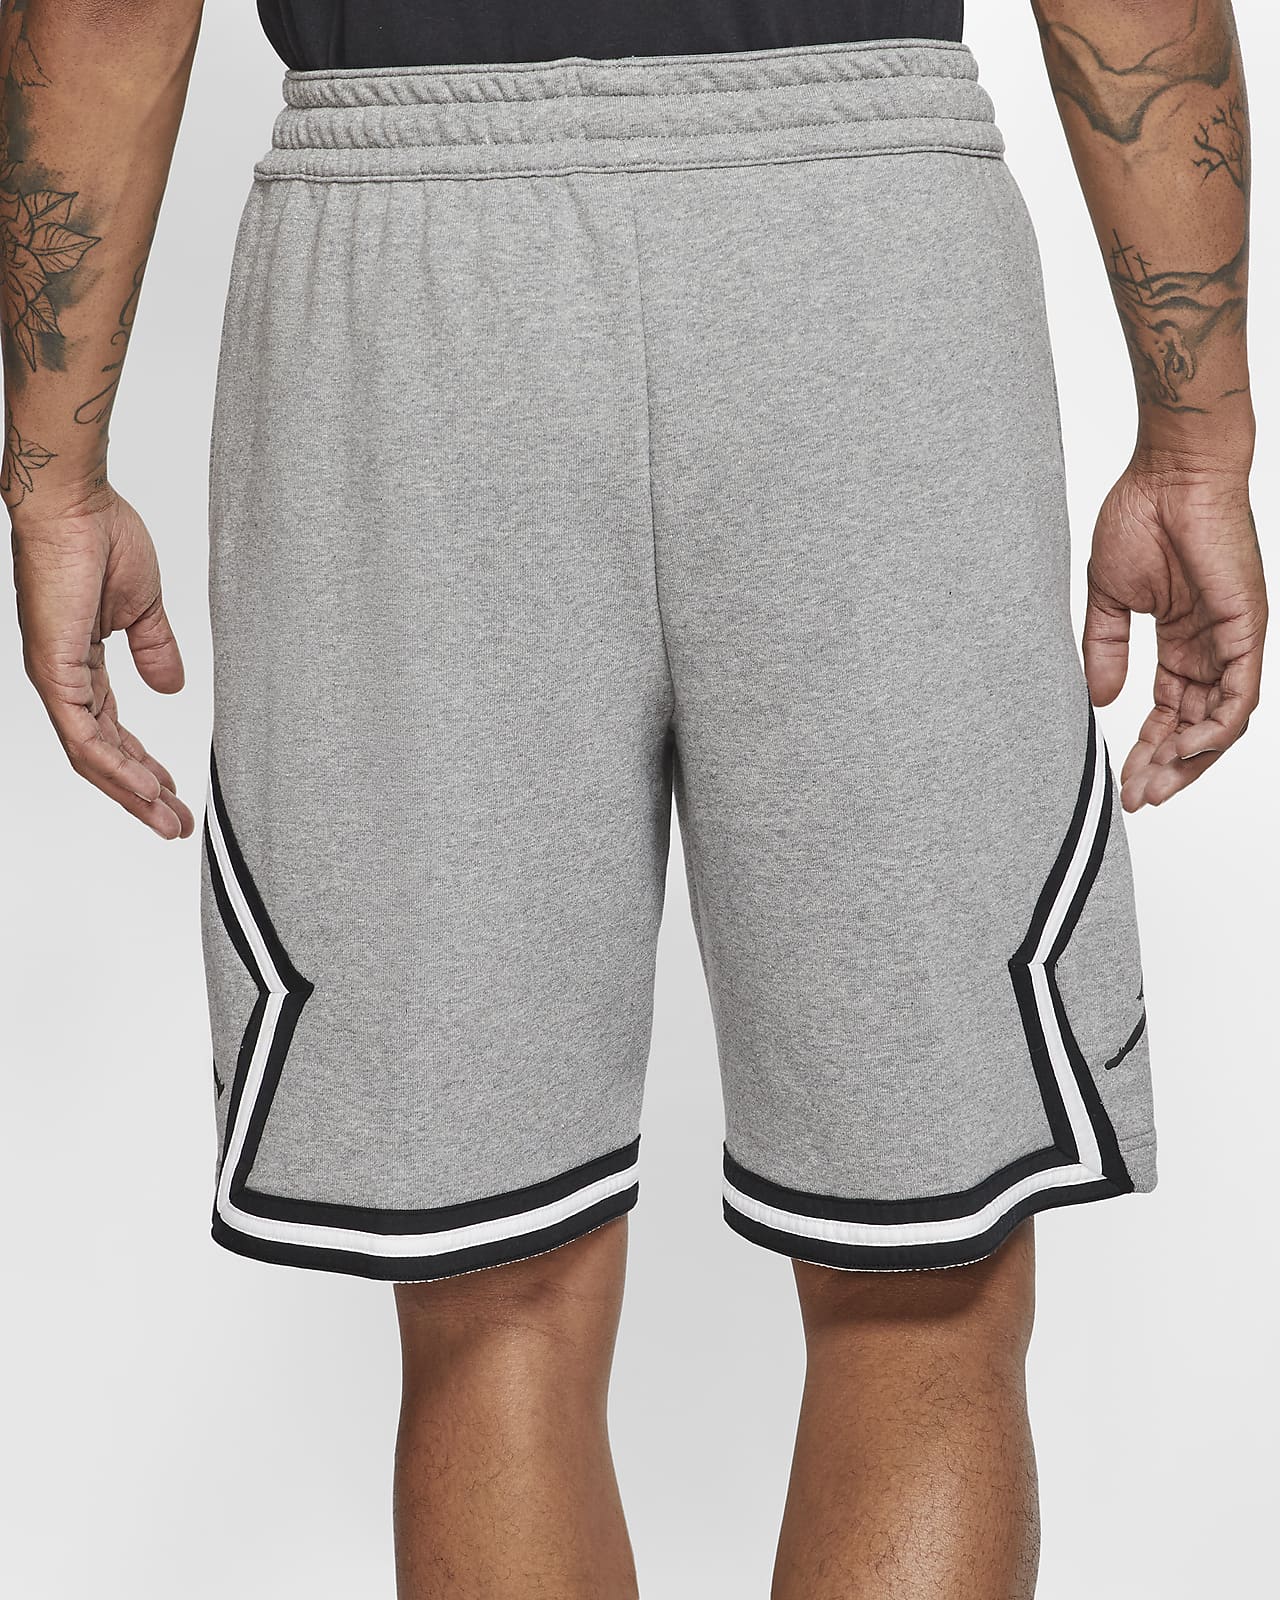 grey jordan sweat shorts